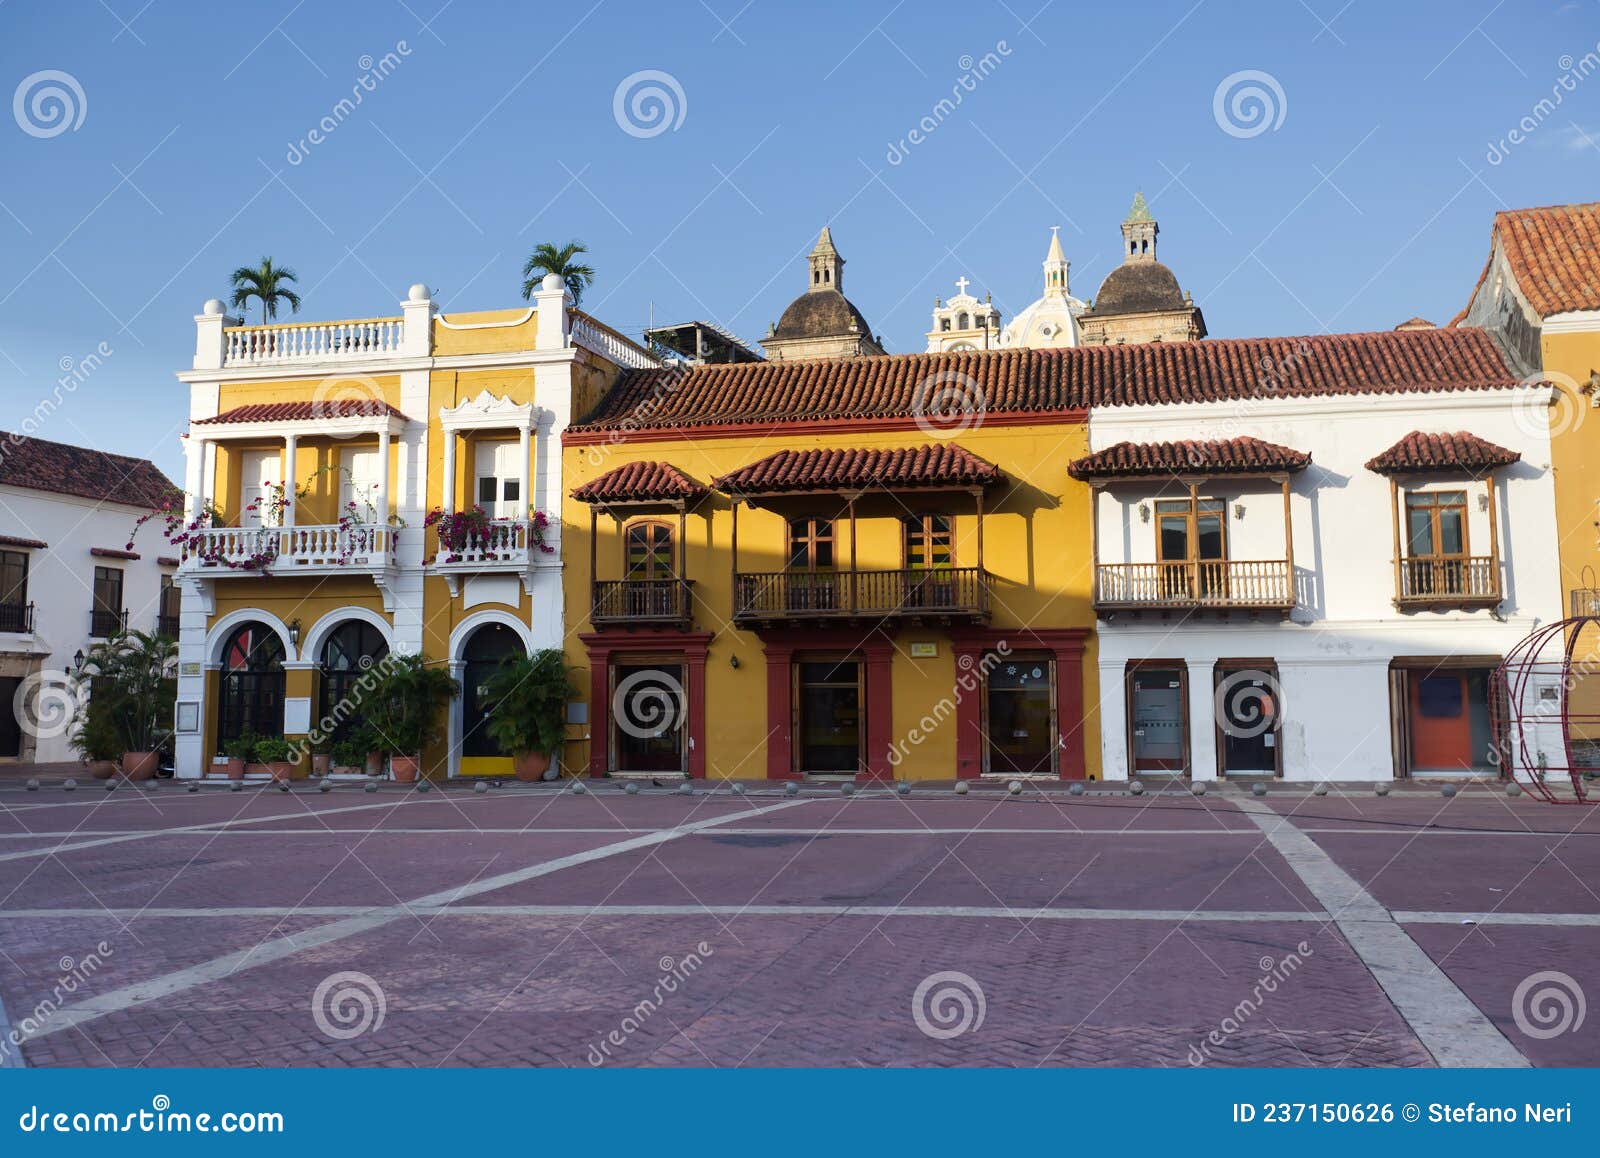 plaza de la aduana in cartagena, colombia